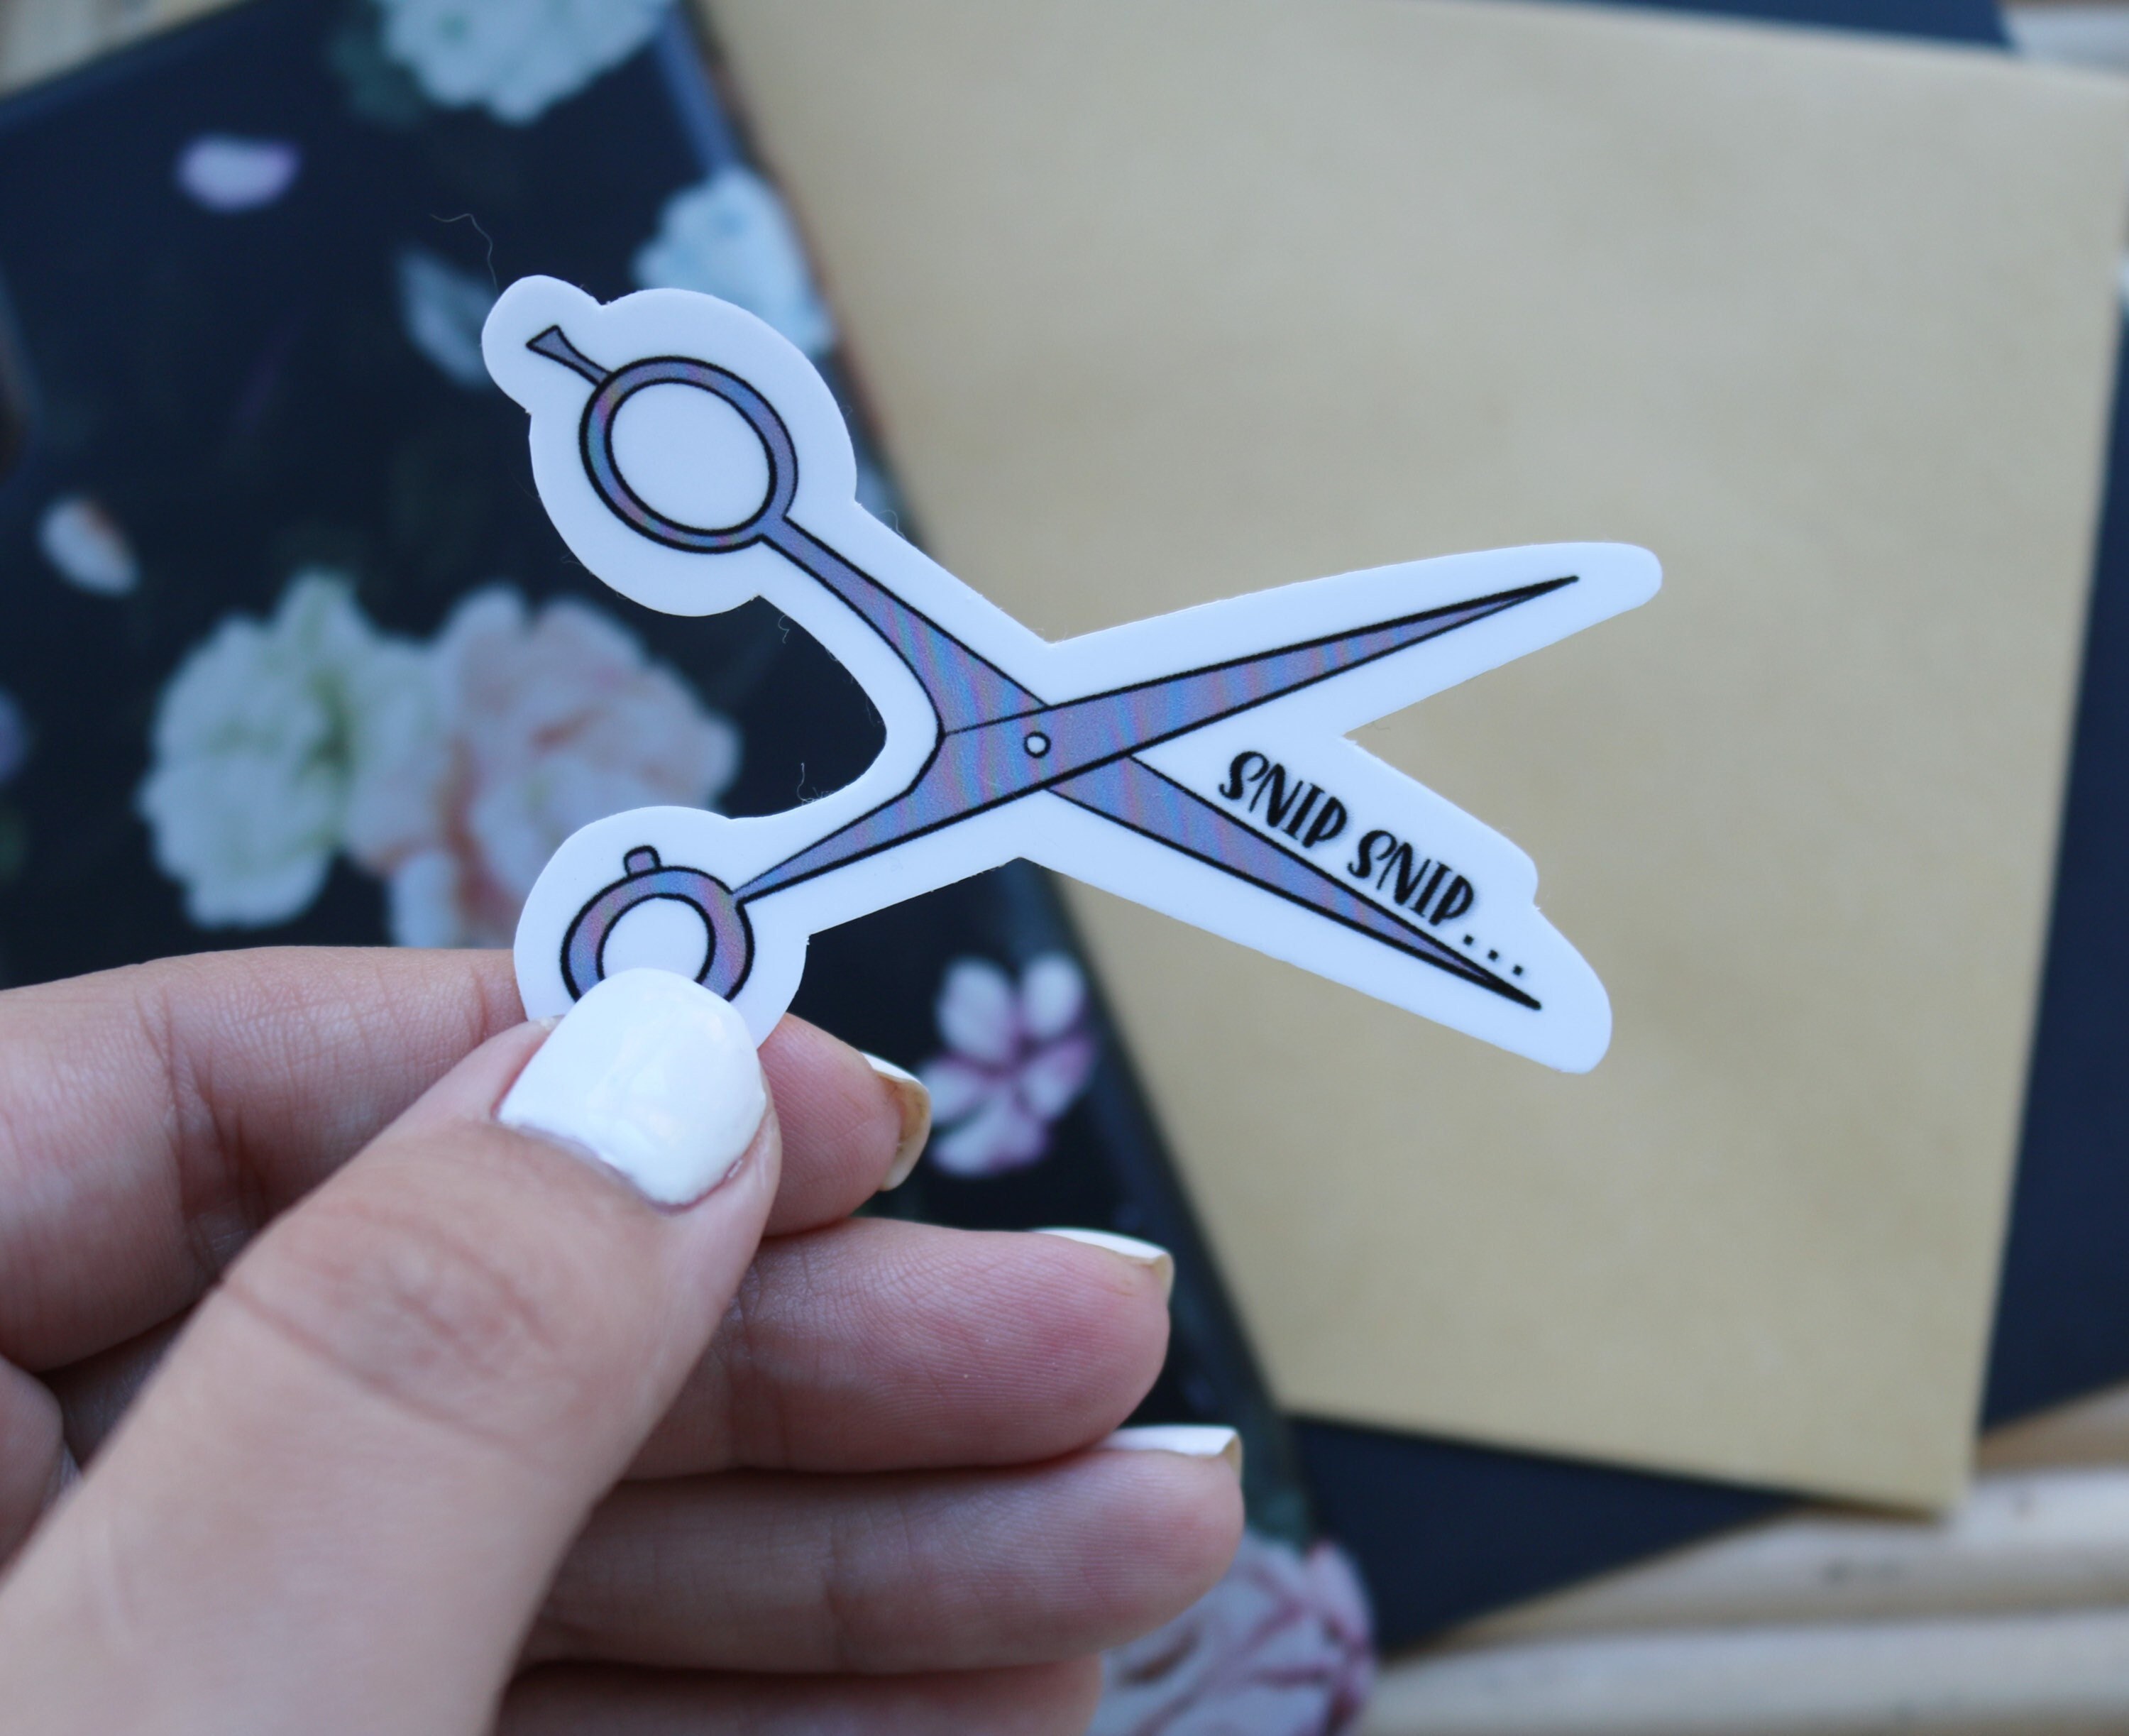 Bird Scissors Sticker for Sale by DigitalRedesign